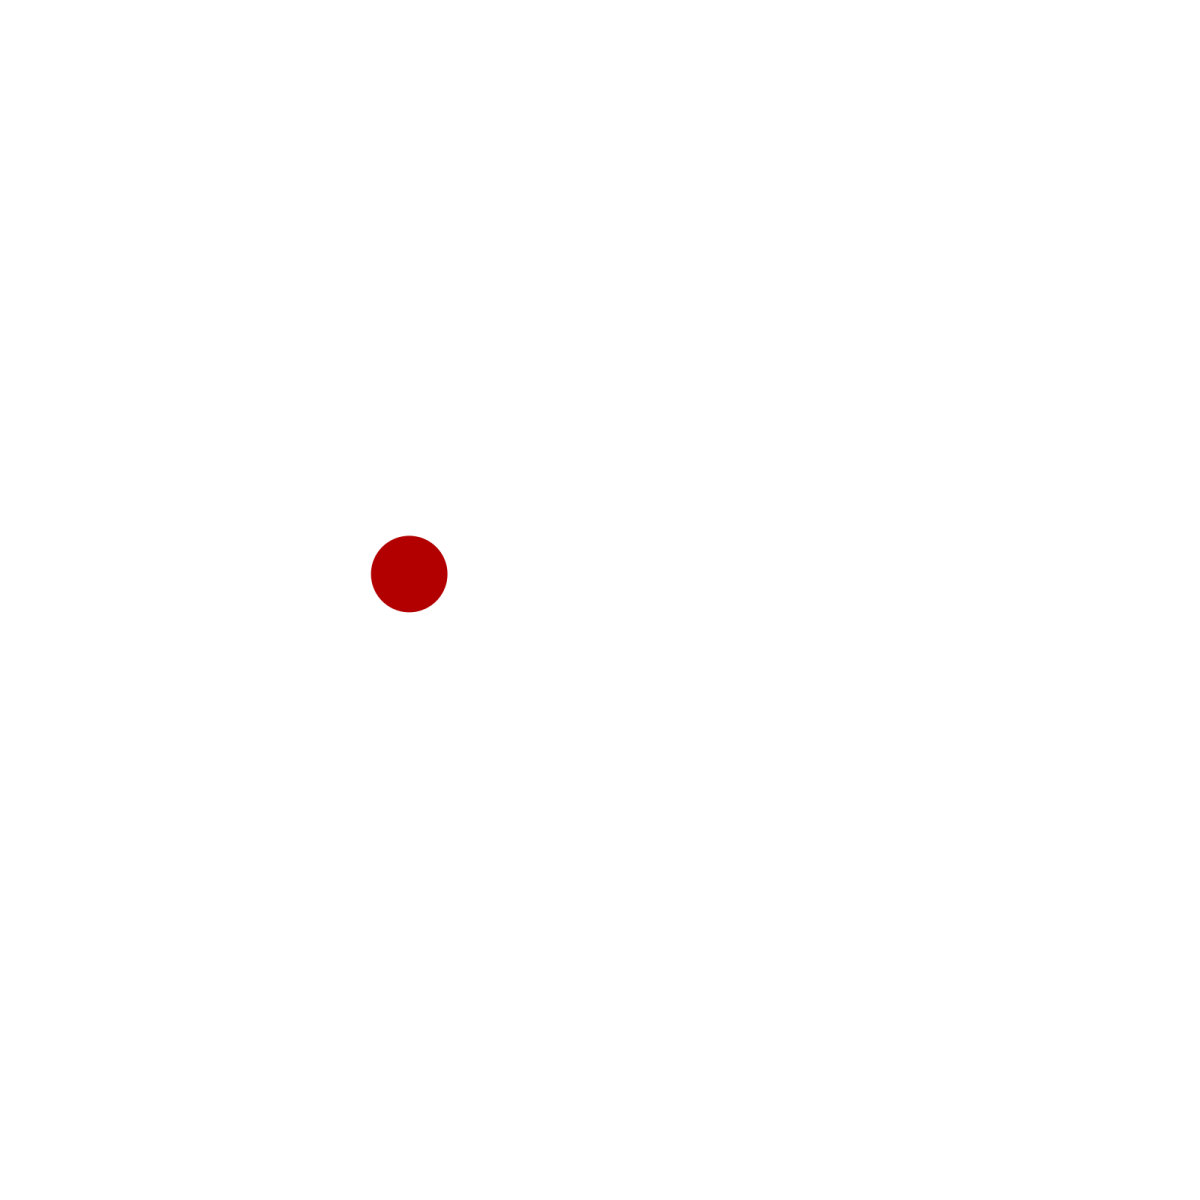 enktro GmbH & Co. KG